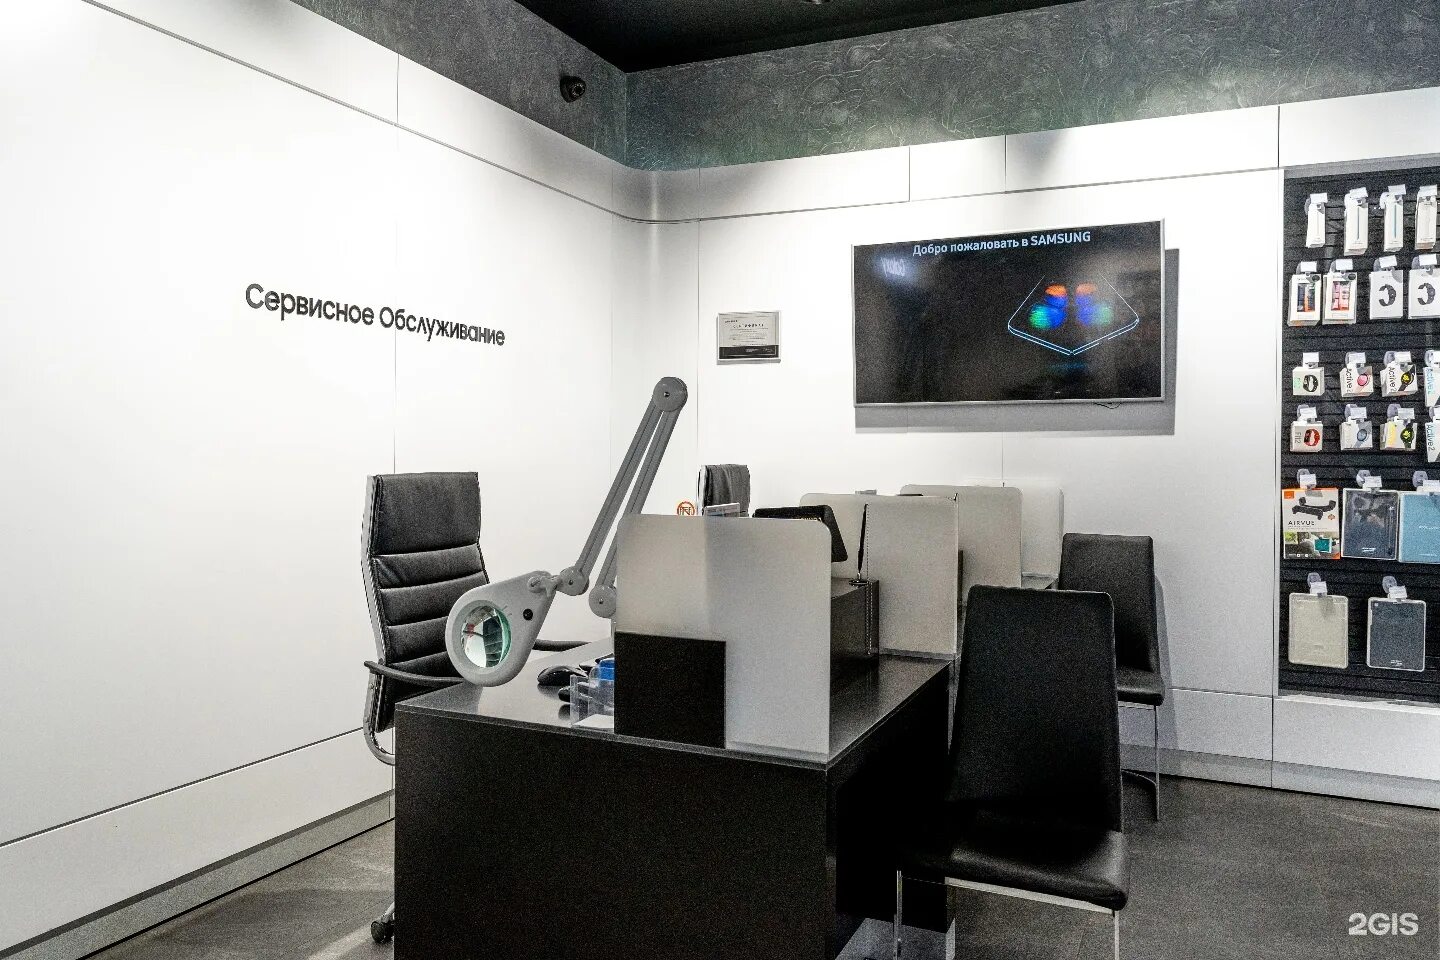 Космонавтов 14 фирменный центр самсунг. Сервисный центр Samsung. Самсунг сервис Плаза Москва. Самсунг сервисное обслуживание. Ремонт ноутбуков самсунг сервисный центр москва